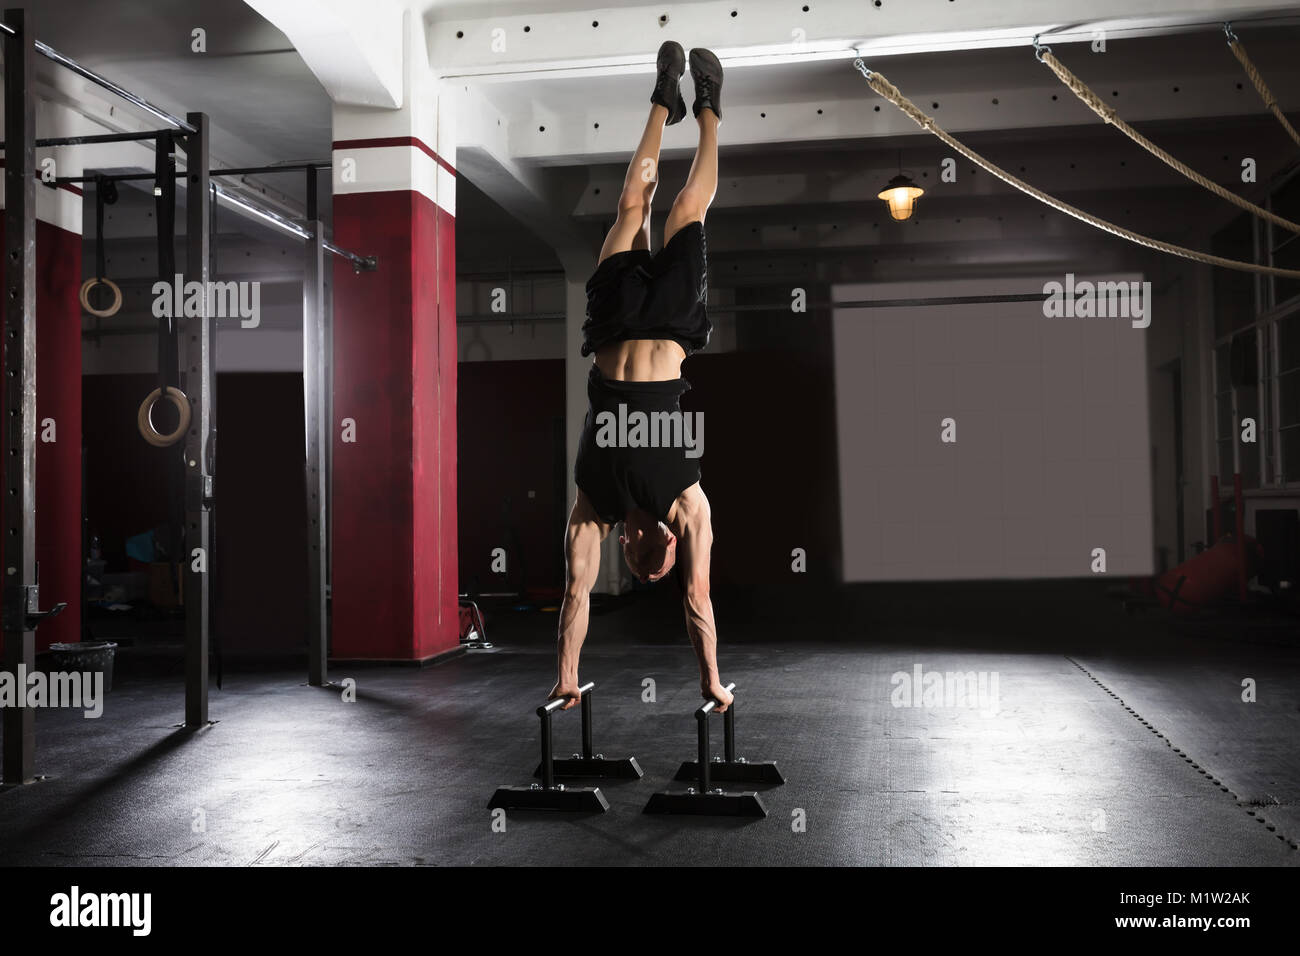 Junge Athlet Mann macht Handstand Übung auf Parallel Bar In der Turnhalle Stockfoto